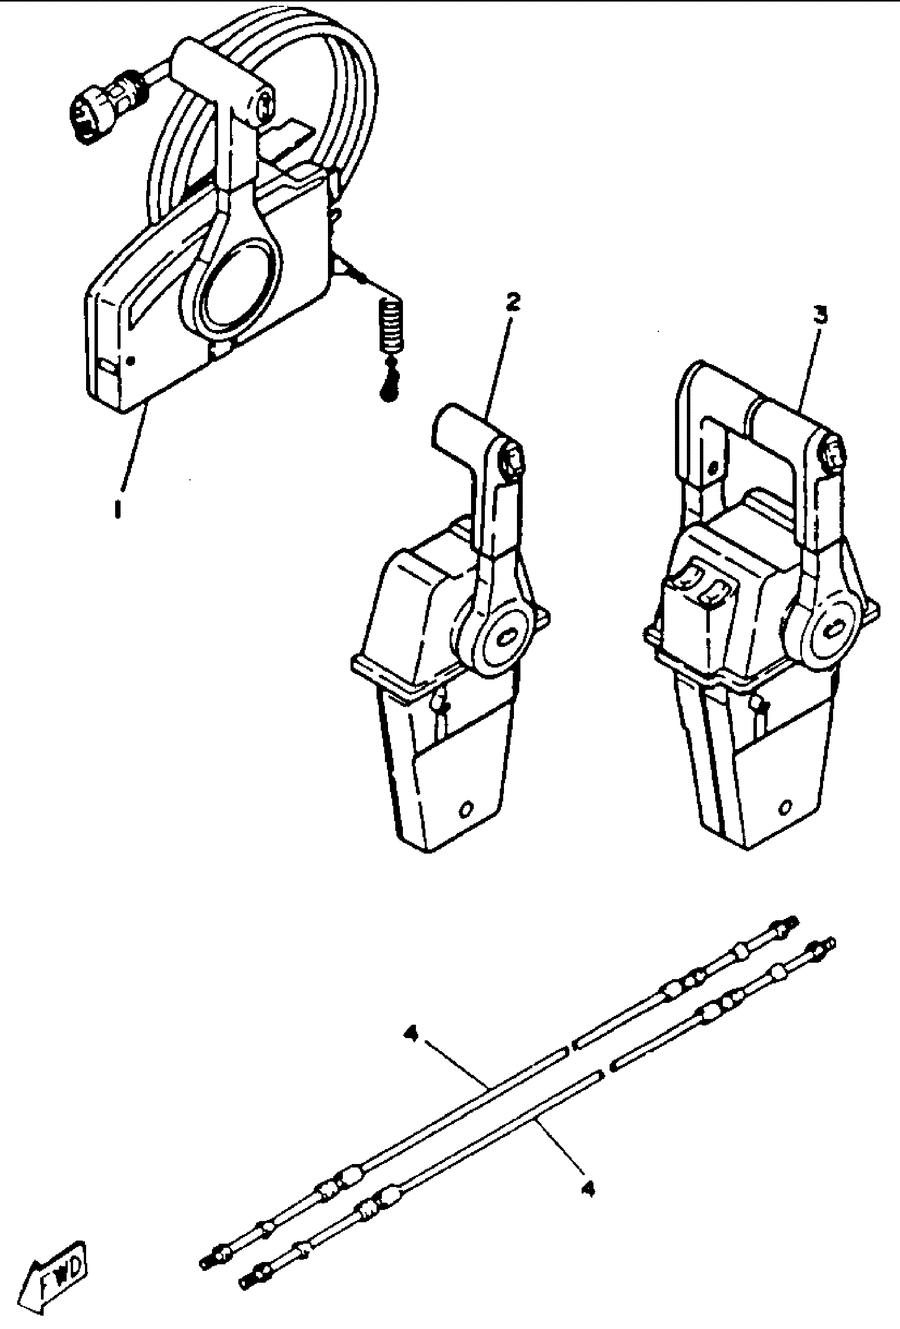 1993 200TXRR REMOTE CONTROL CABLES